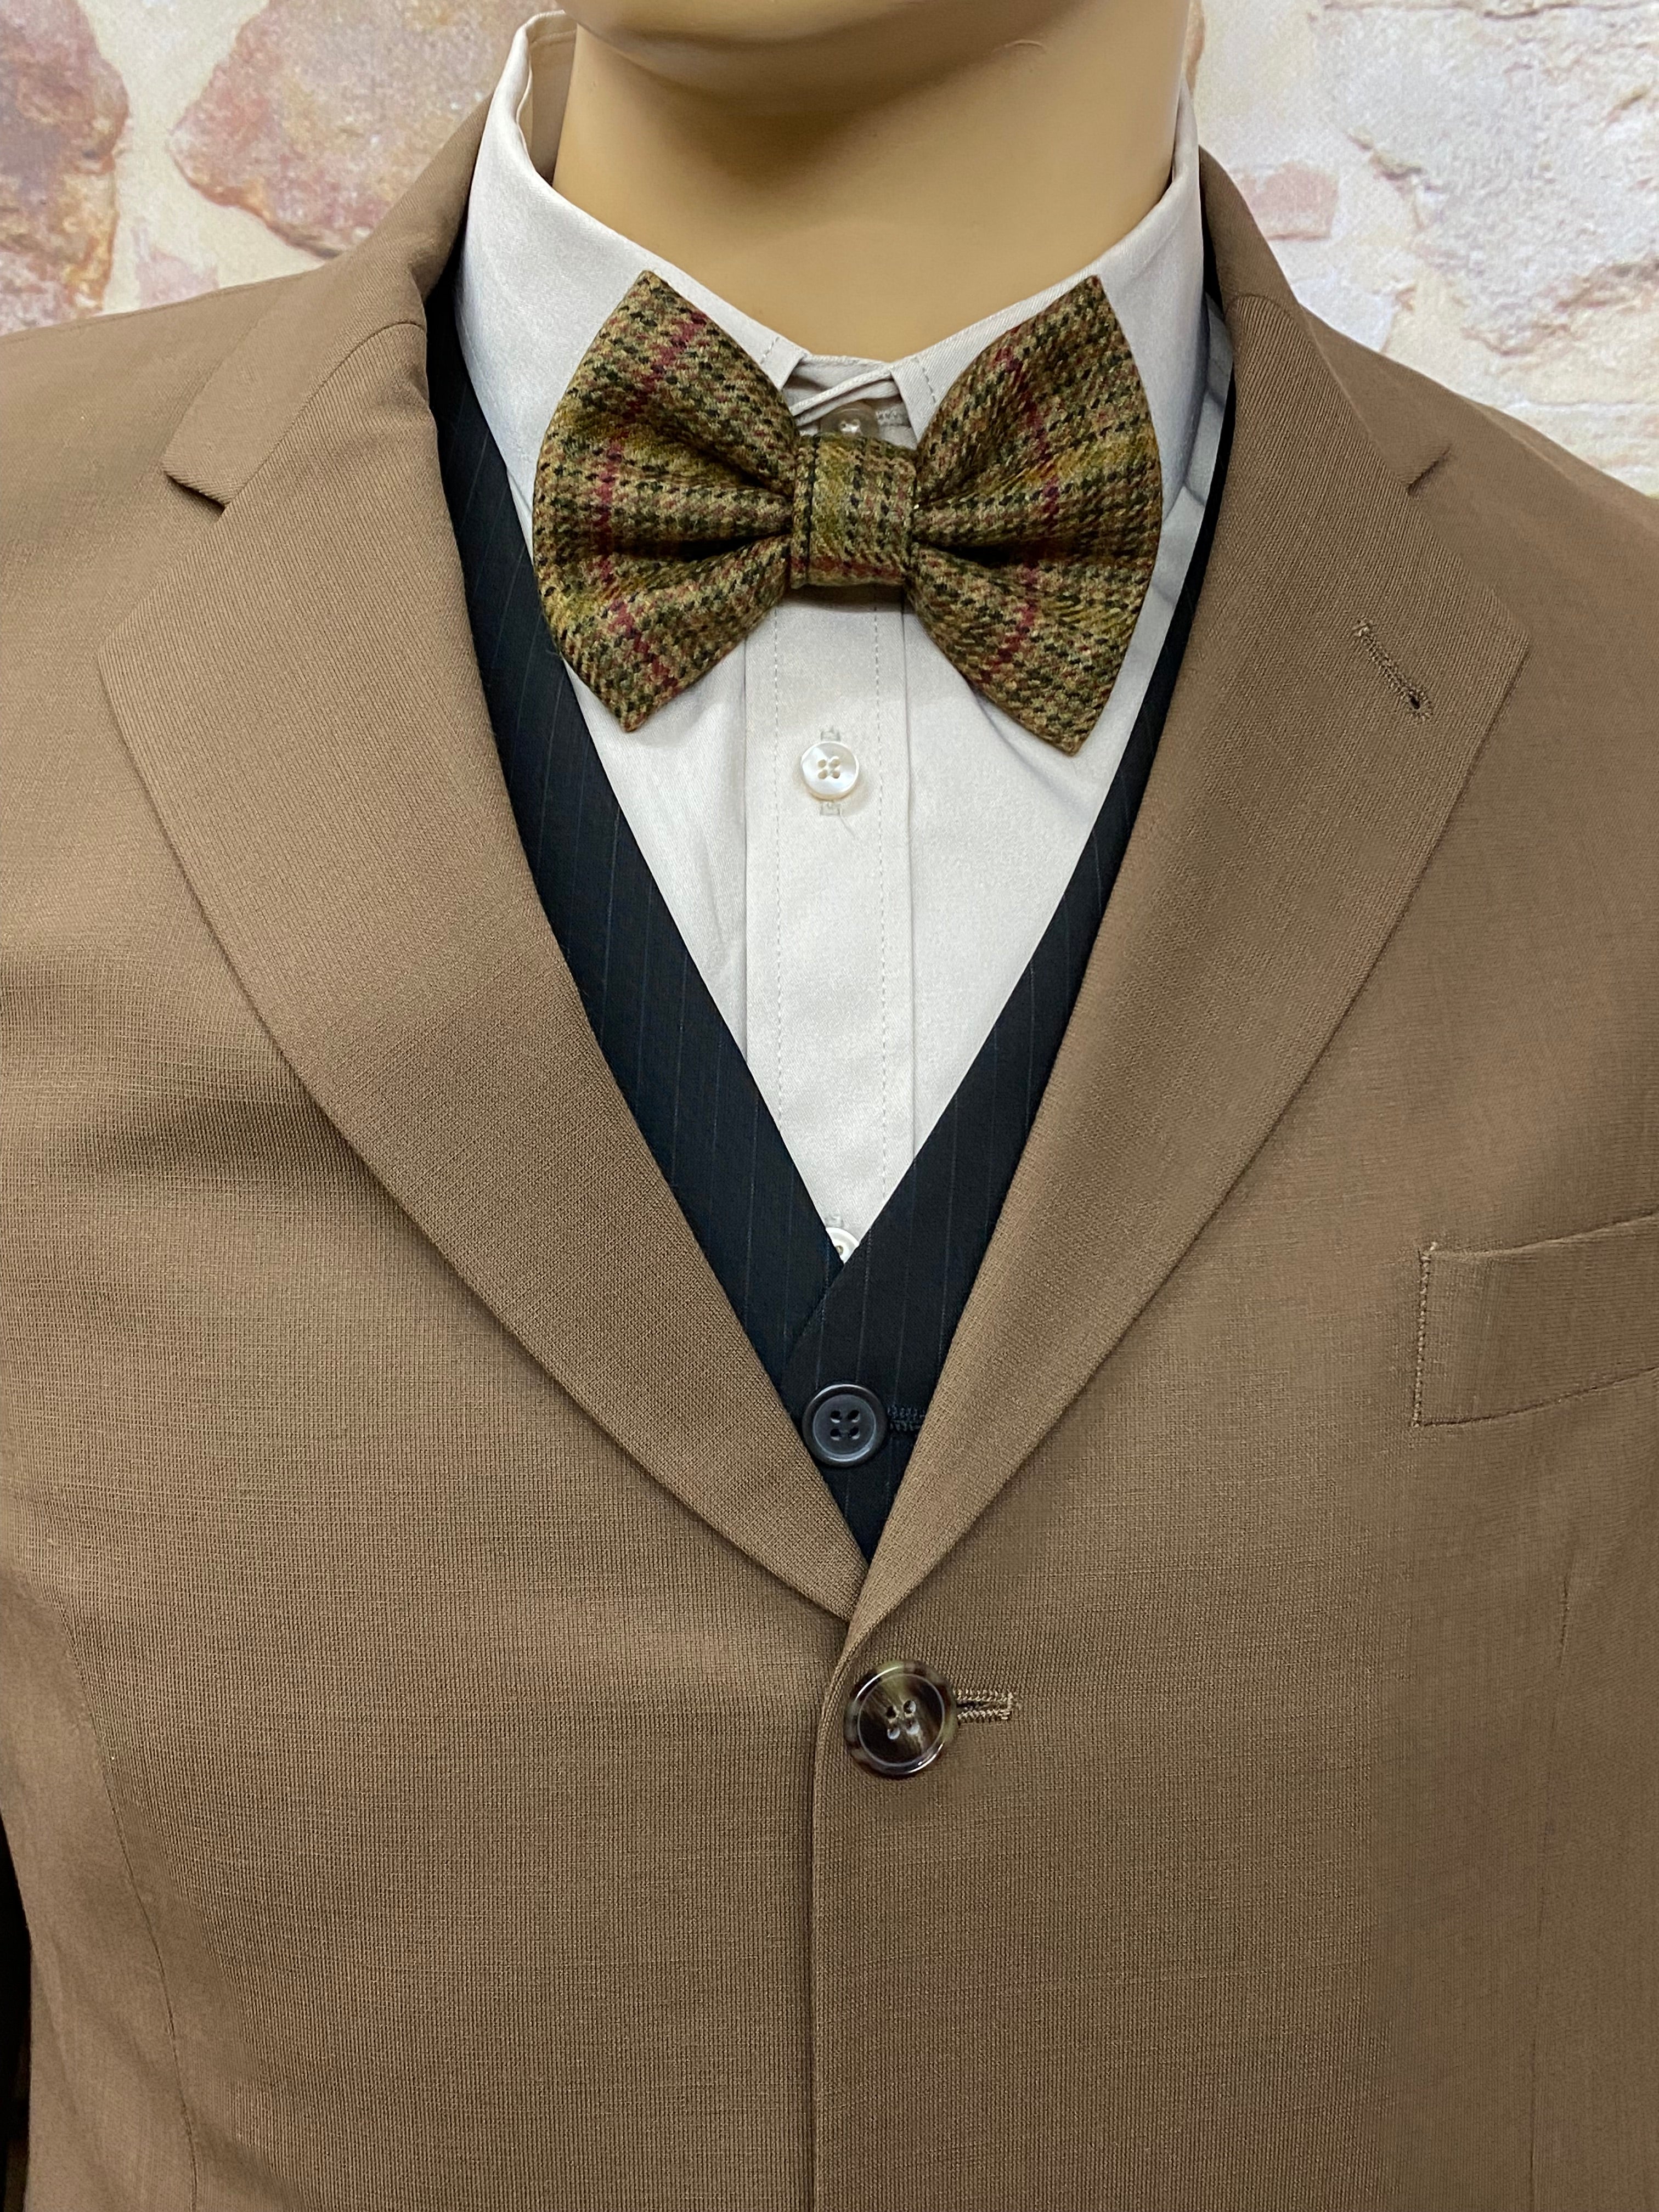 Knickerbocker Outfit für Herren 20er Jahre Stil Gr.52